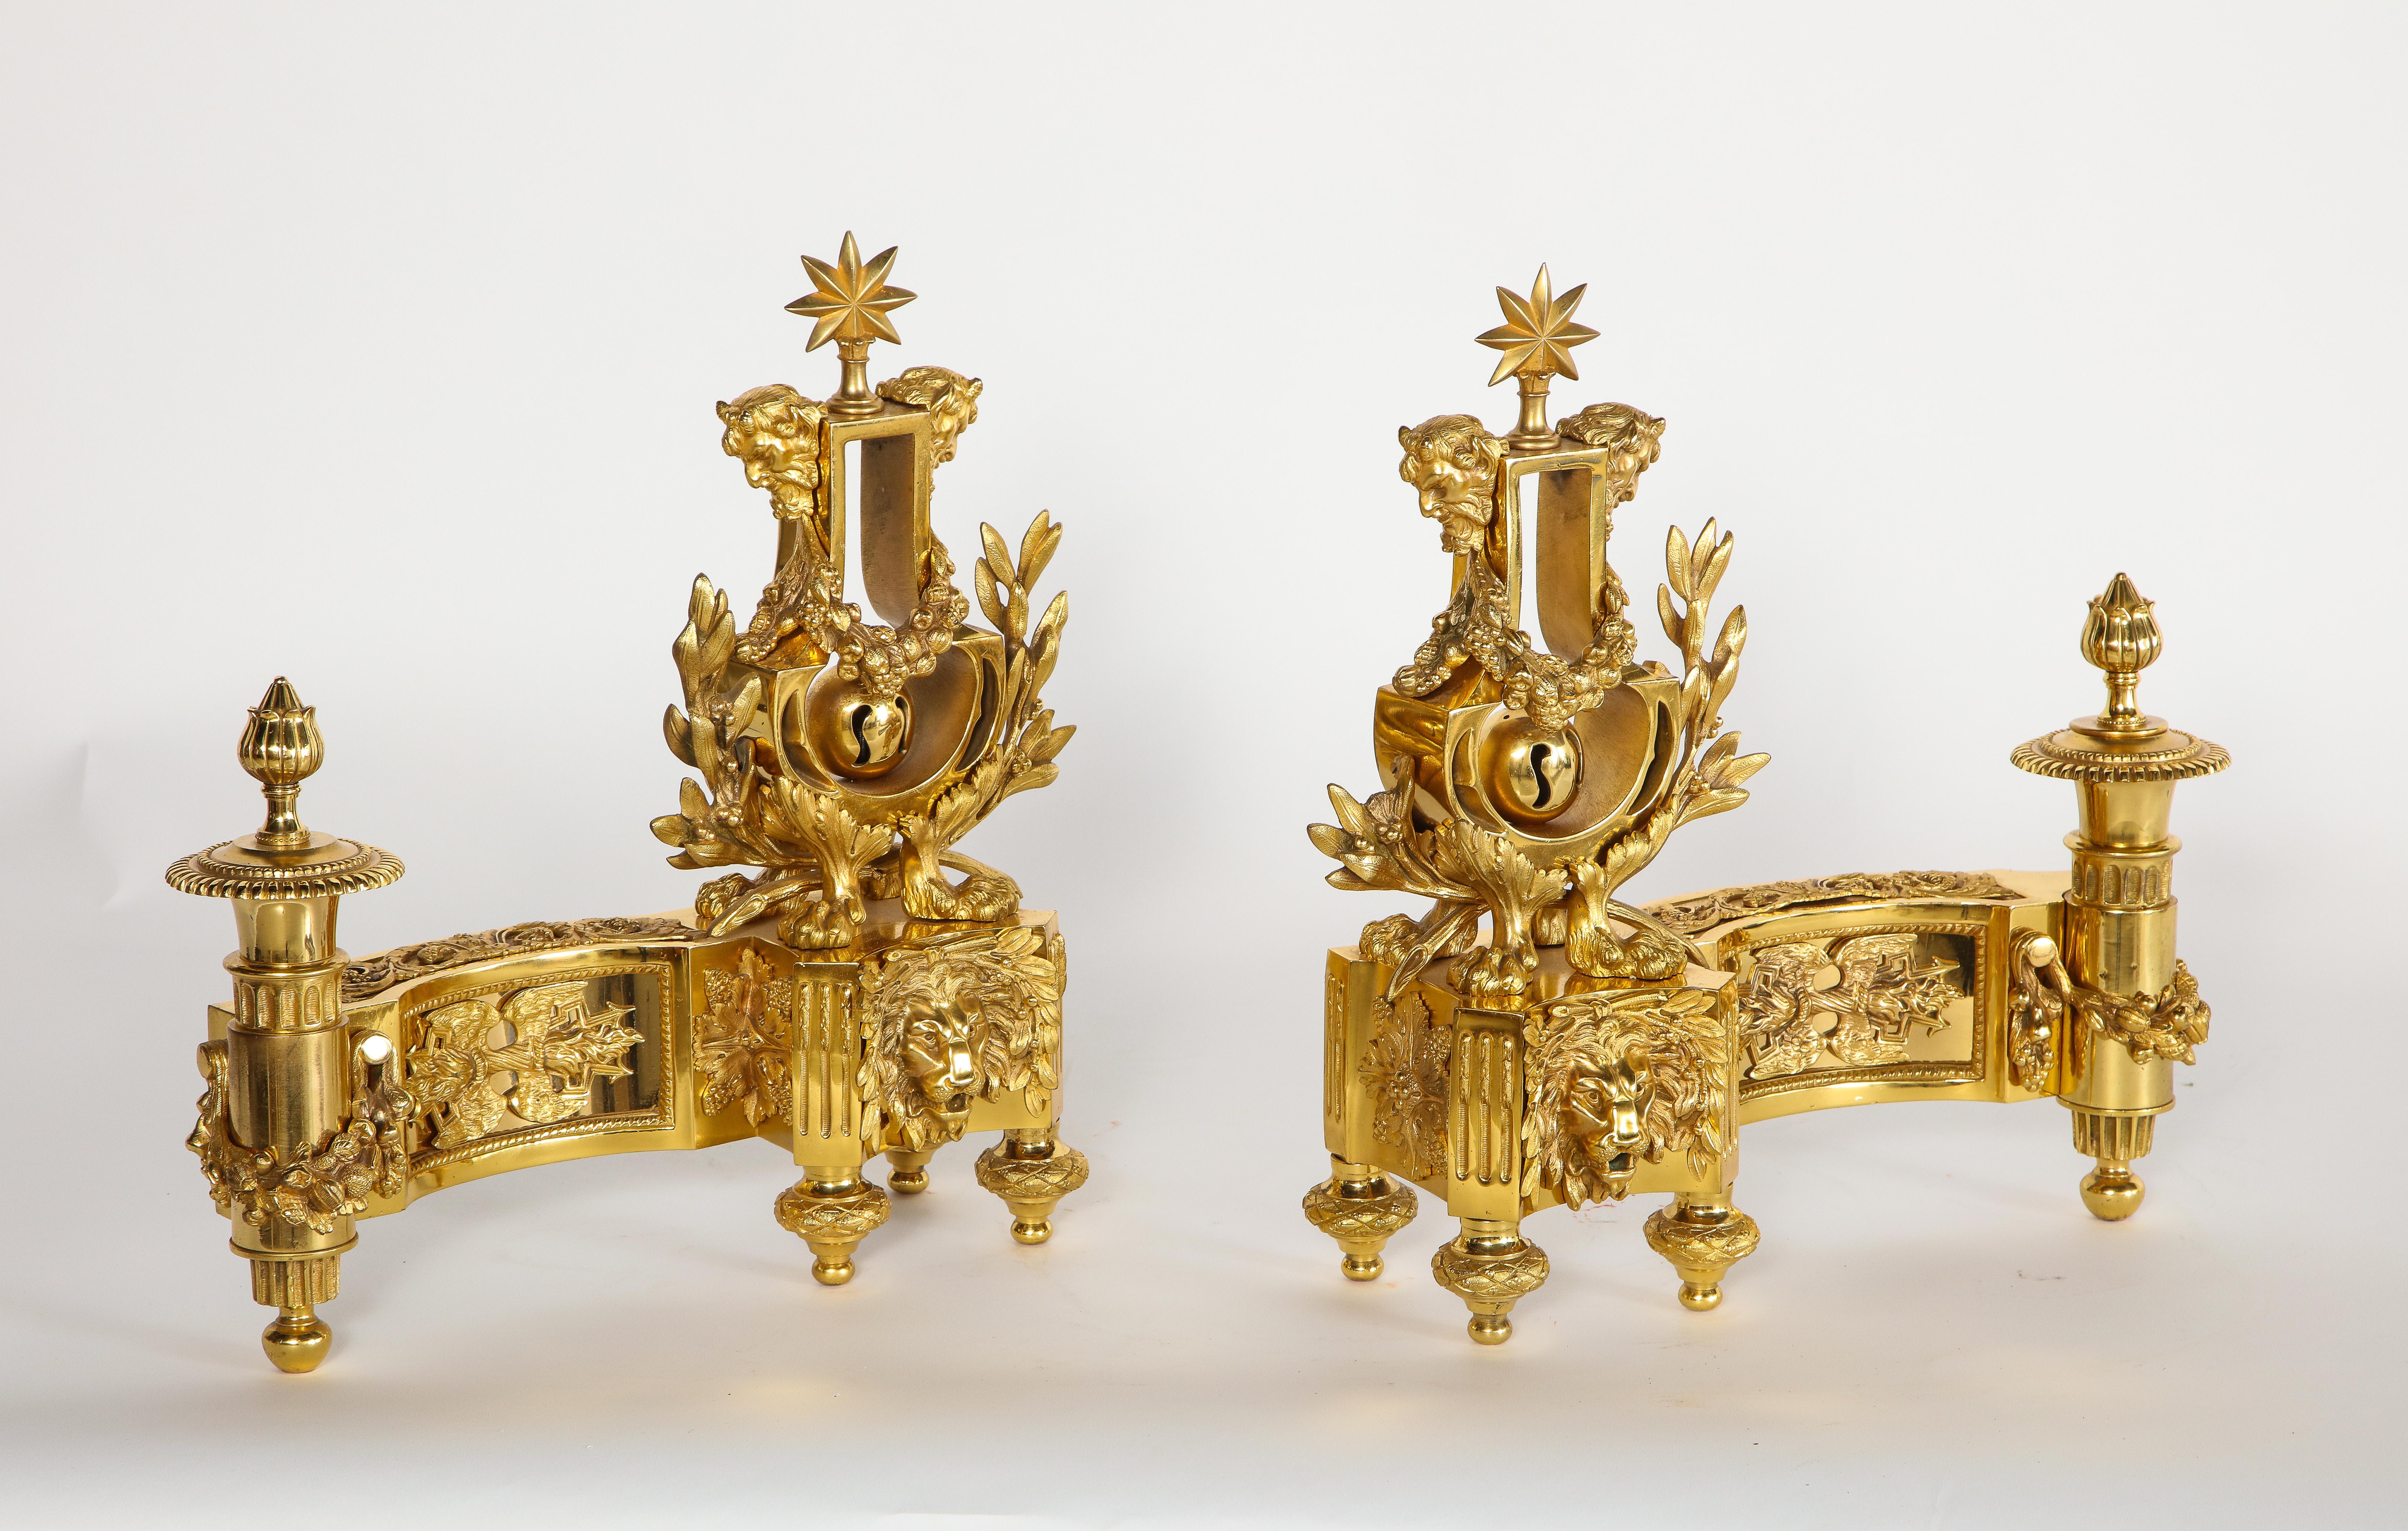 Une fabuleuse paire d'anciens chenets de style Louis XVI en bronze doré de forme lyre. Chaque pièce est exceptionnellement moulée, ciselée à la main et ciselée avec une grande précision et qualité. Les bases sont décorées de multiples panneaux en